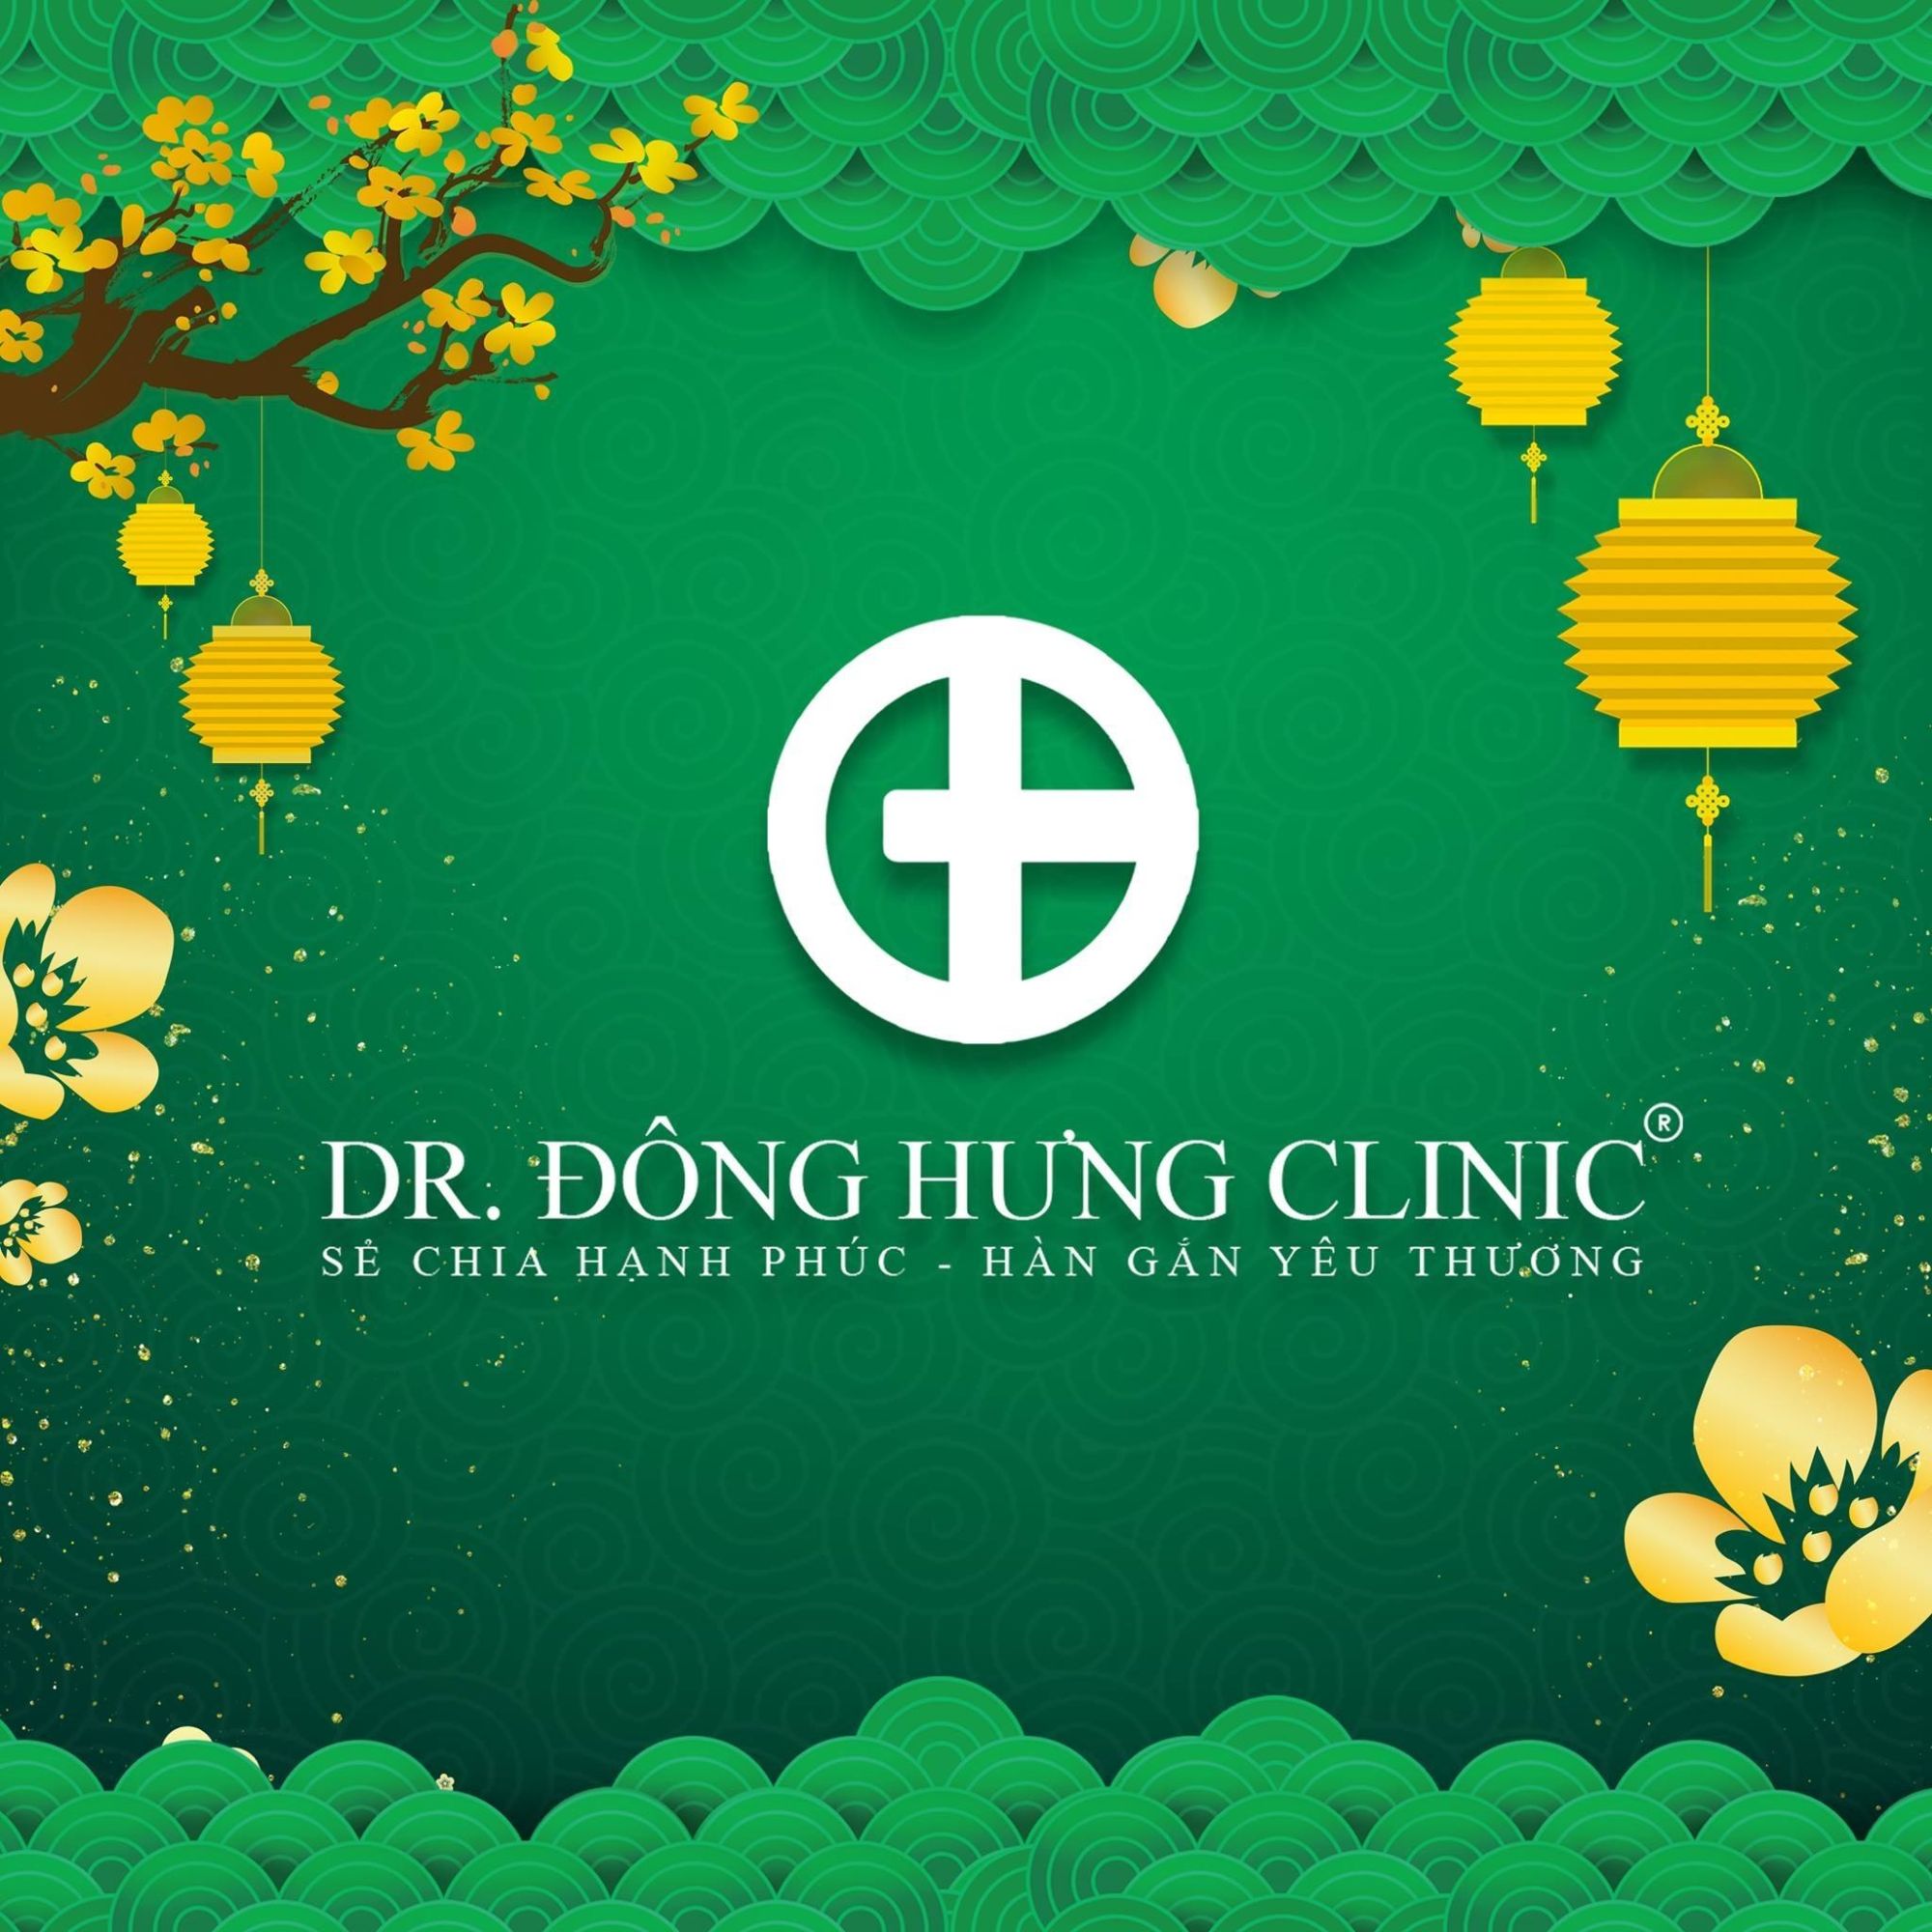 DH Clinic Đông Hưng